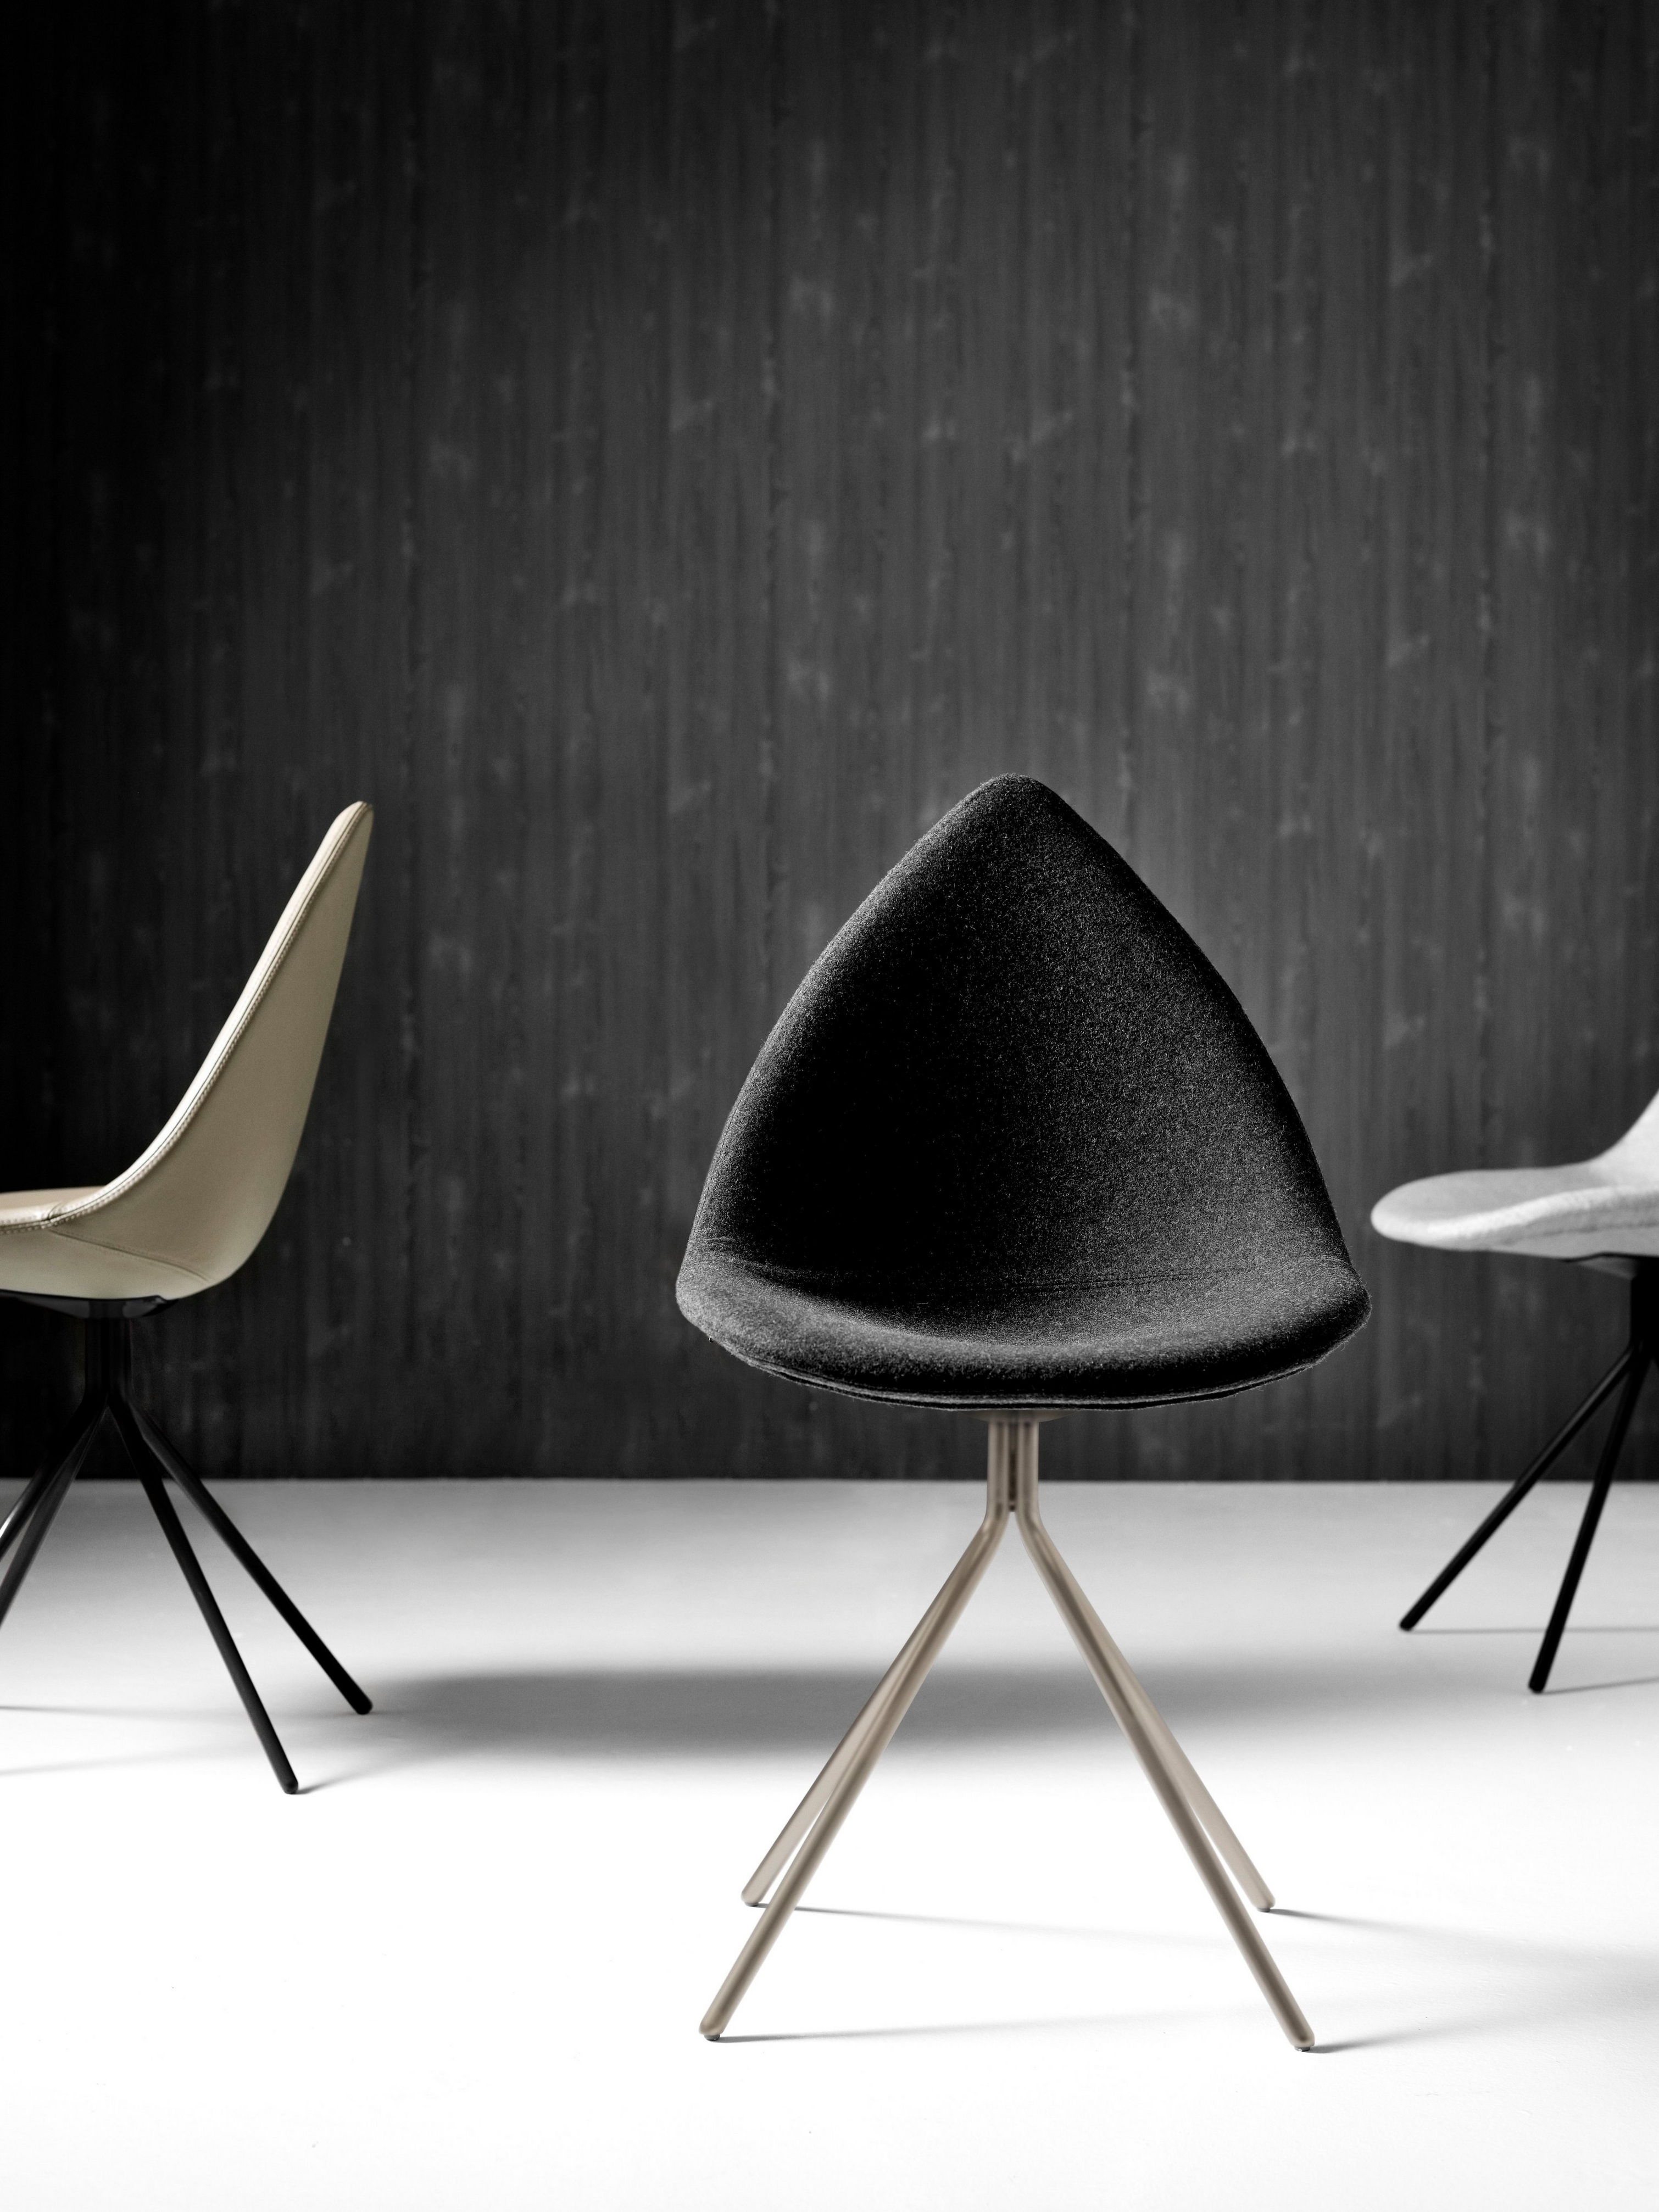 Moderné stoličky Ottawa v monochromatickom prostredí pred čiernym textúrovaným pozadím.